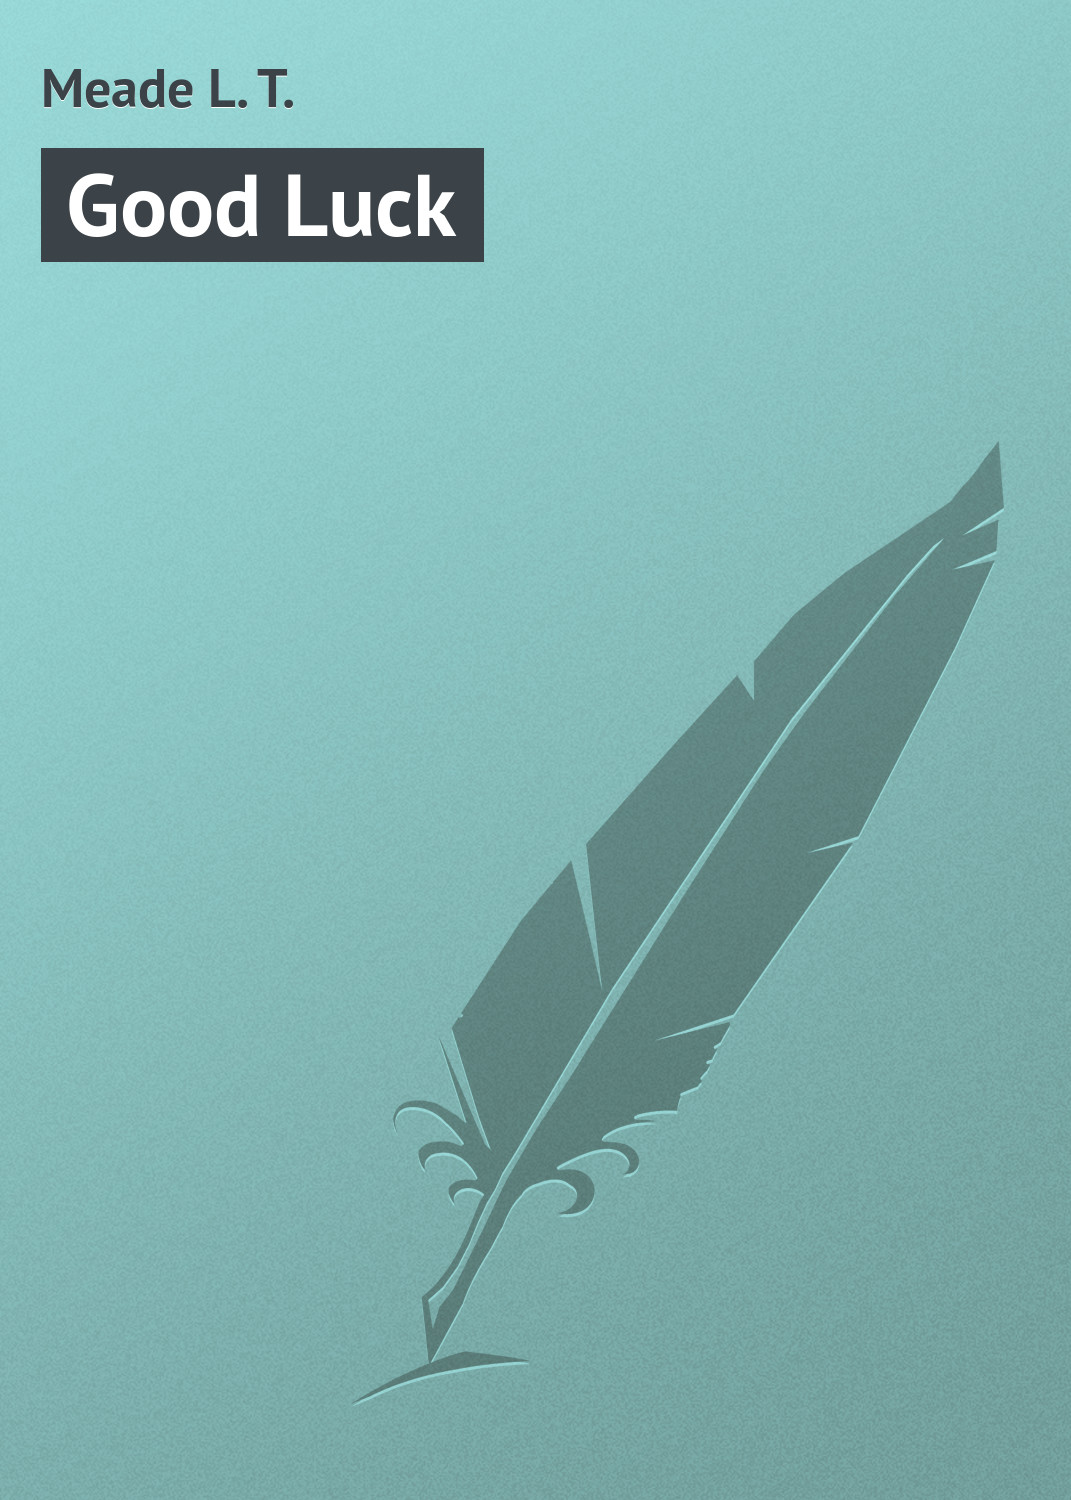 Книга Good Luck из серии , созданная L. Meade, может относится к жанру Зарубежная классика, Зарубежные детские книги. Стоимость электронной книги Good Luck с идентификатором 23160307 составляет 5.99 руб.